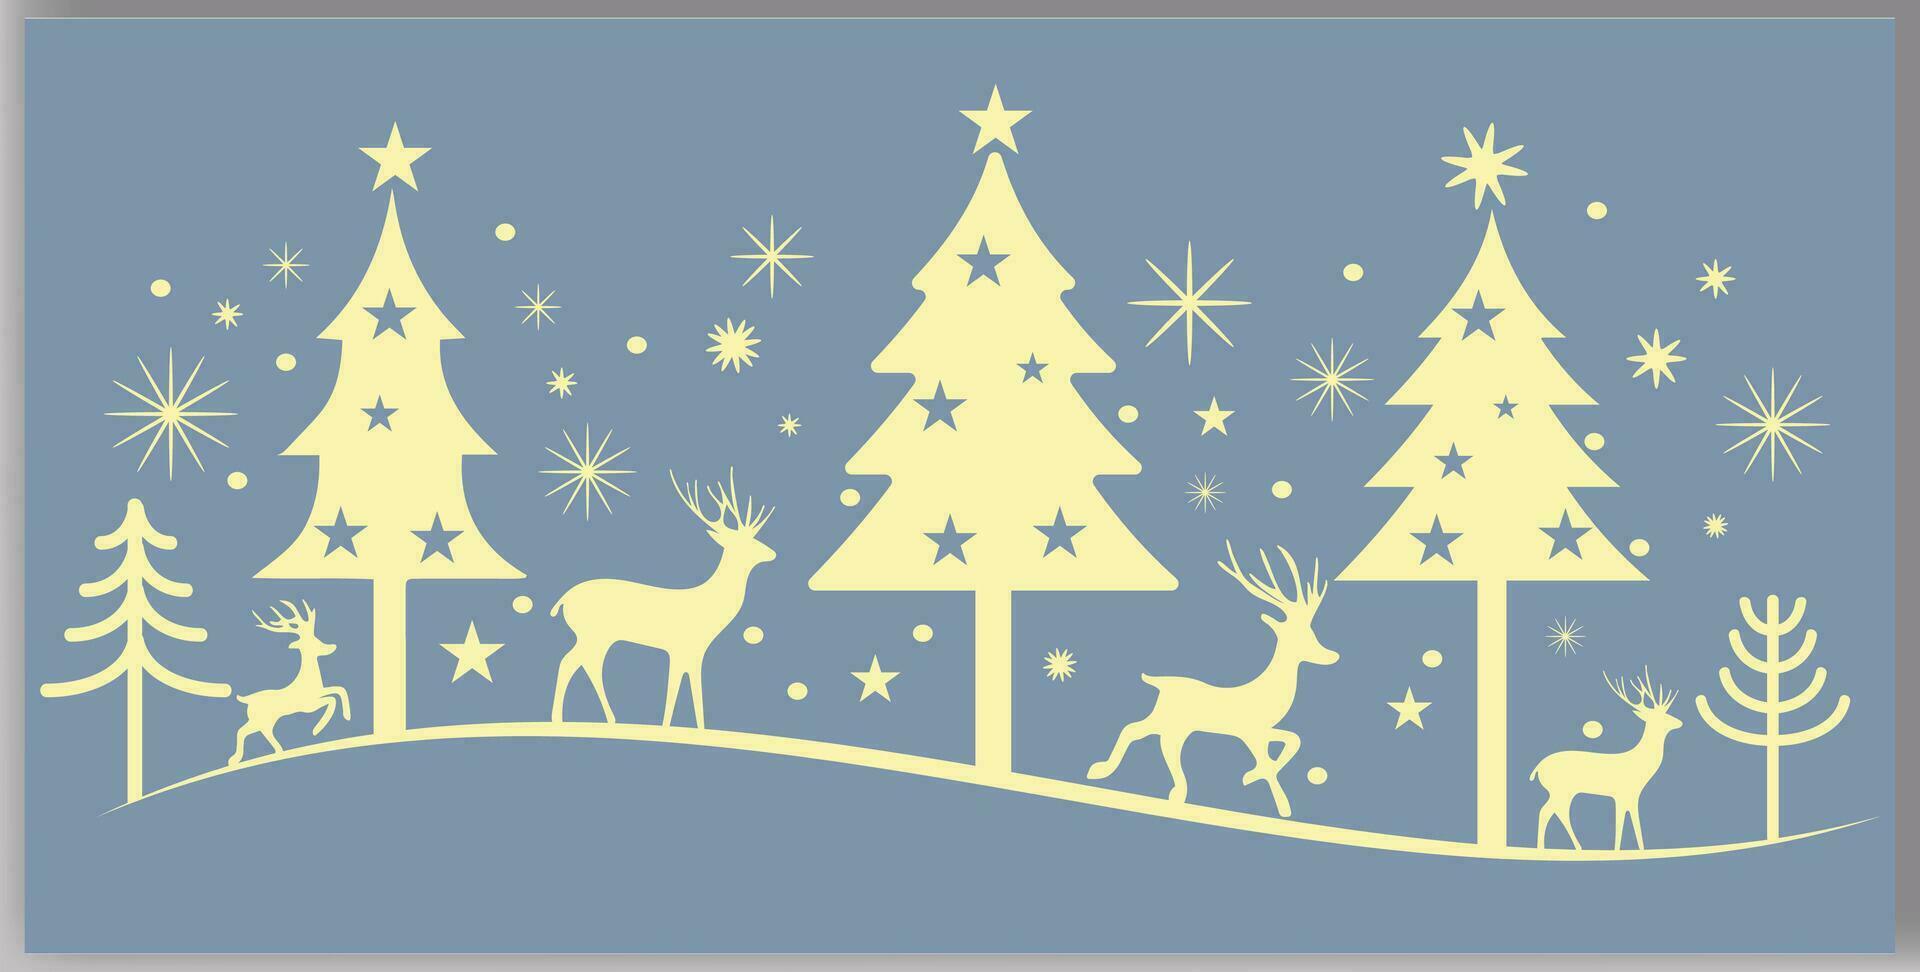 Noël des arbres renne et étoiles dans différent conception vecteur